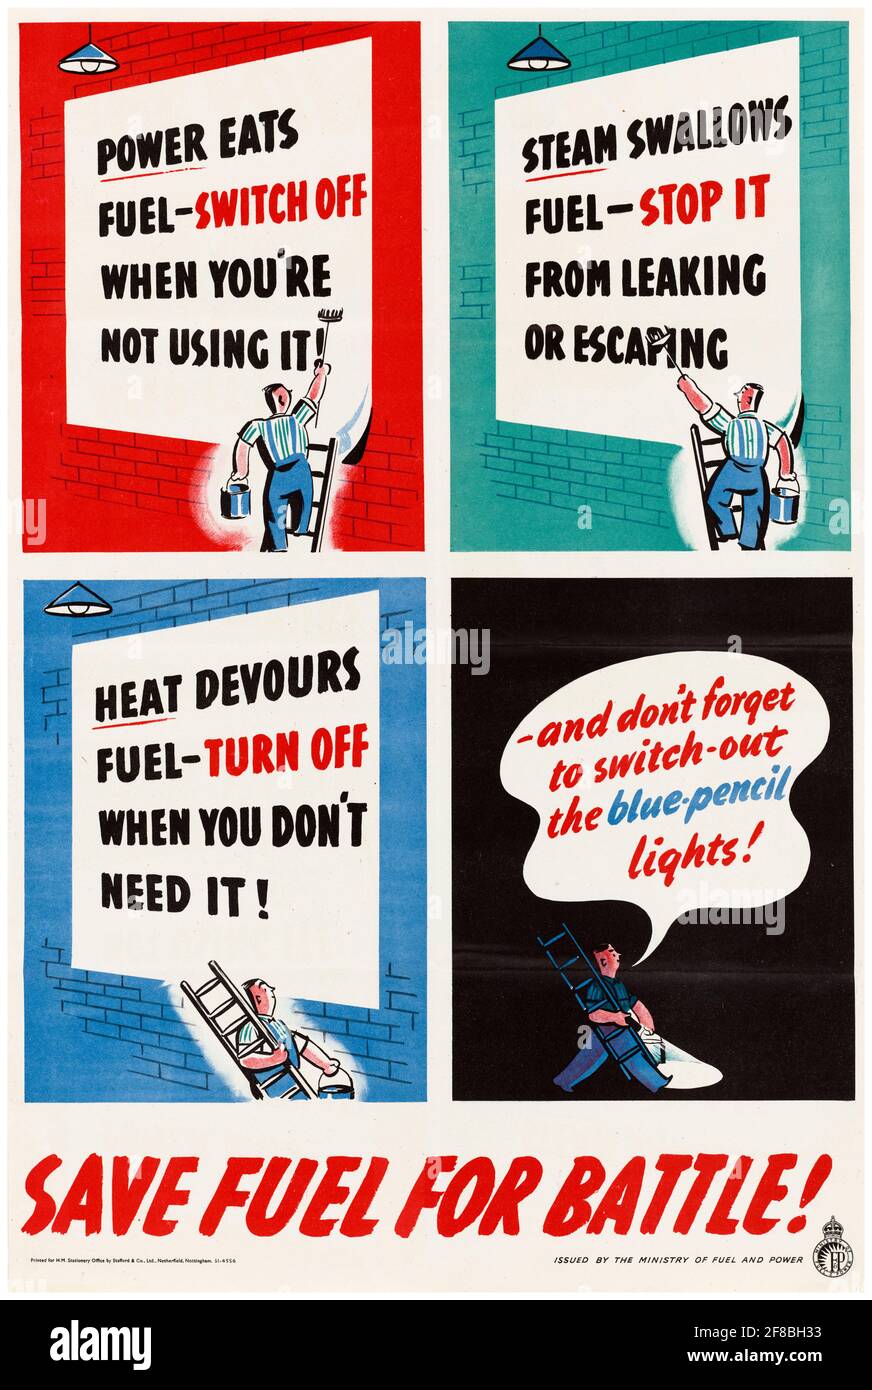 Éteindre, arrêter, éteindre, économiser du carburant pour la bataille!, affiche britannique WW2 économie de carburant, 1942-1945 Banque D'Images